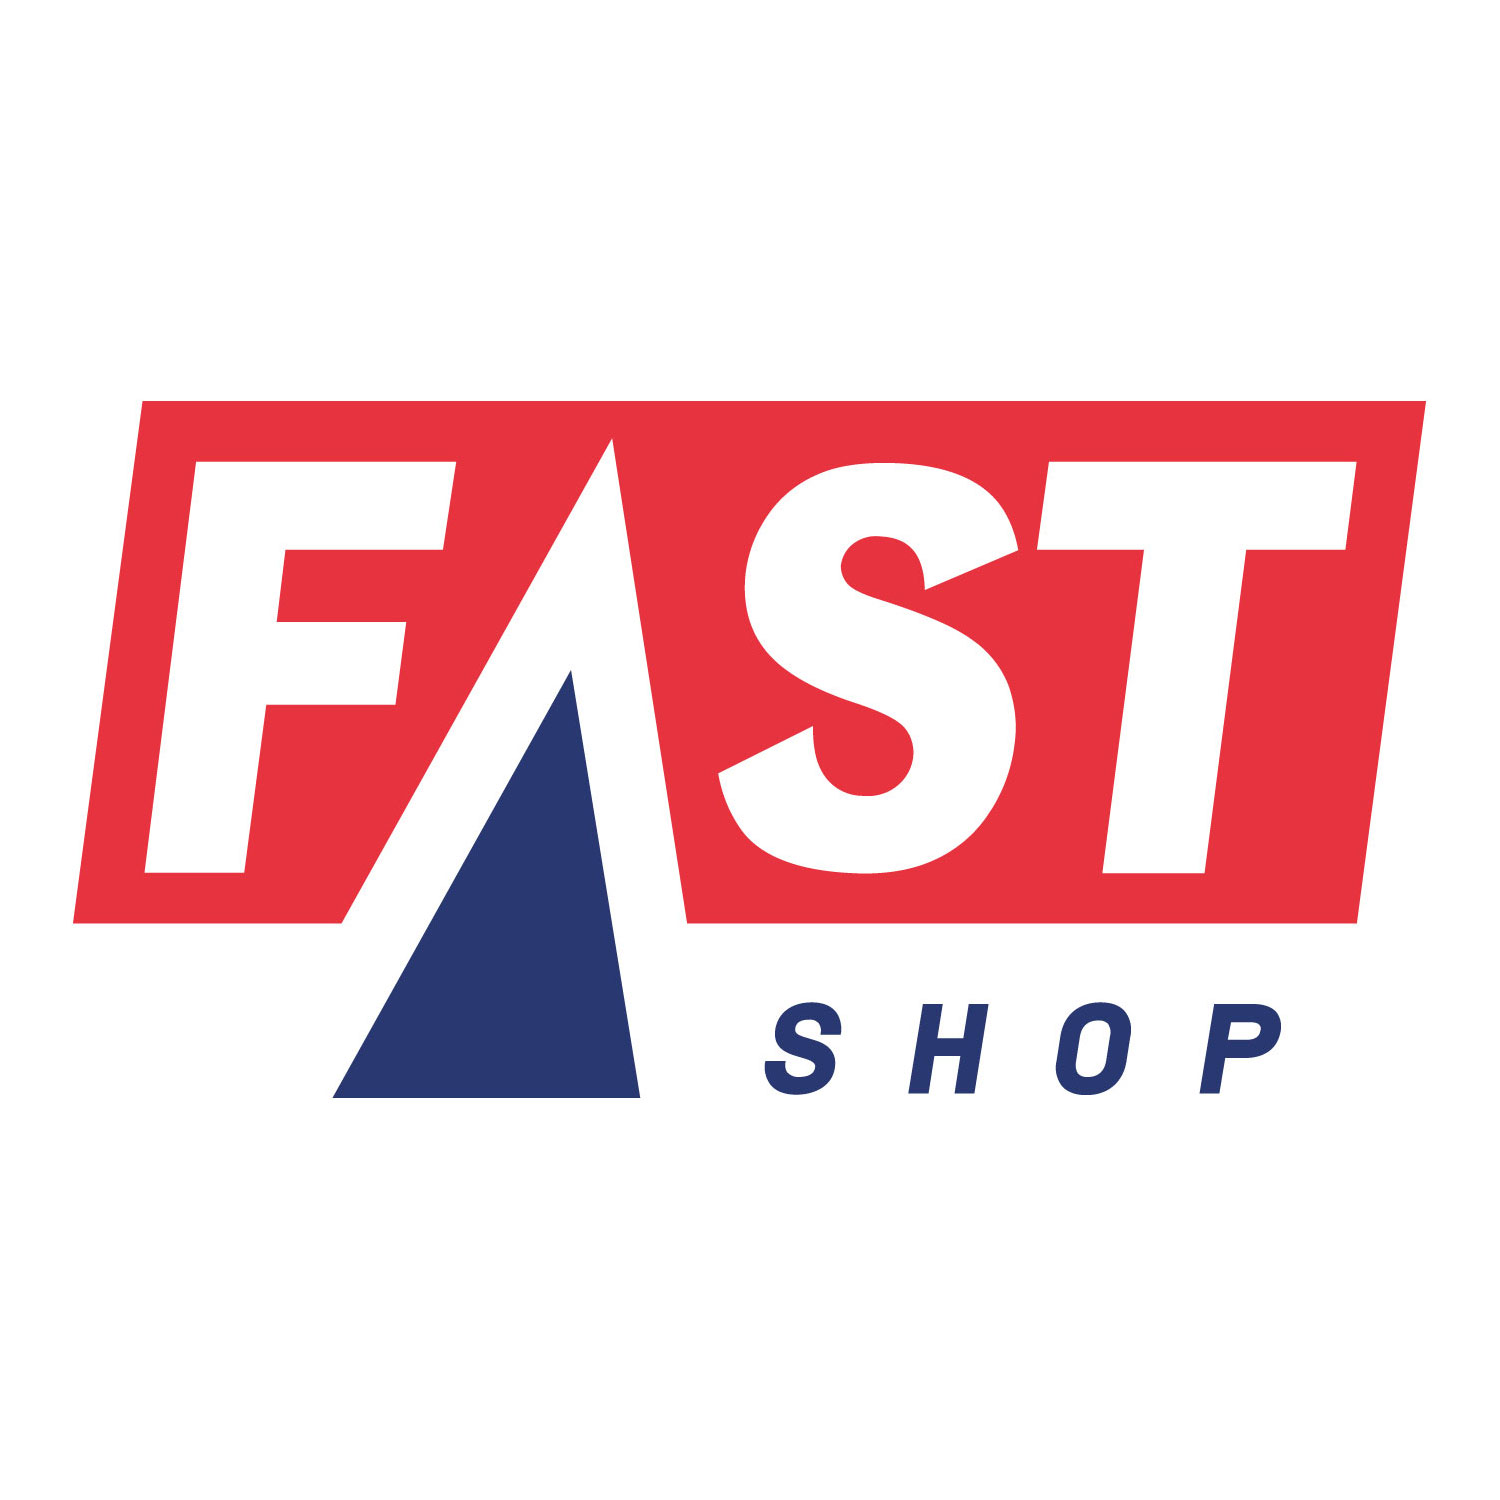 Fast Shop Logo